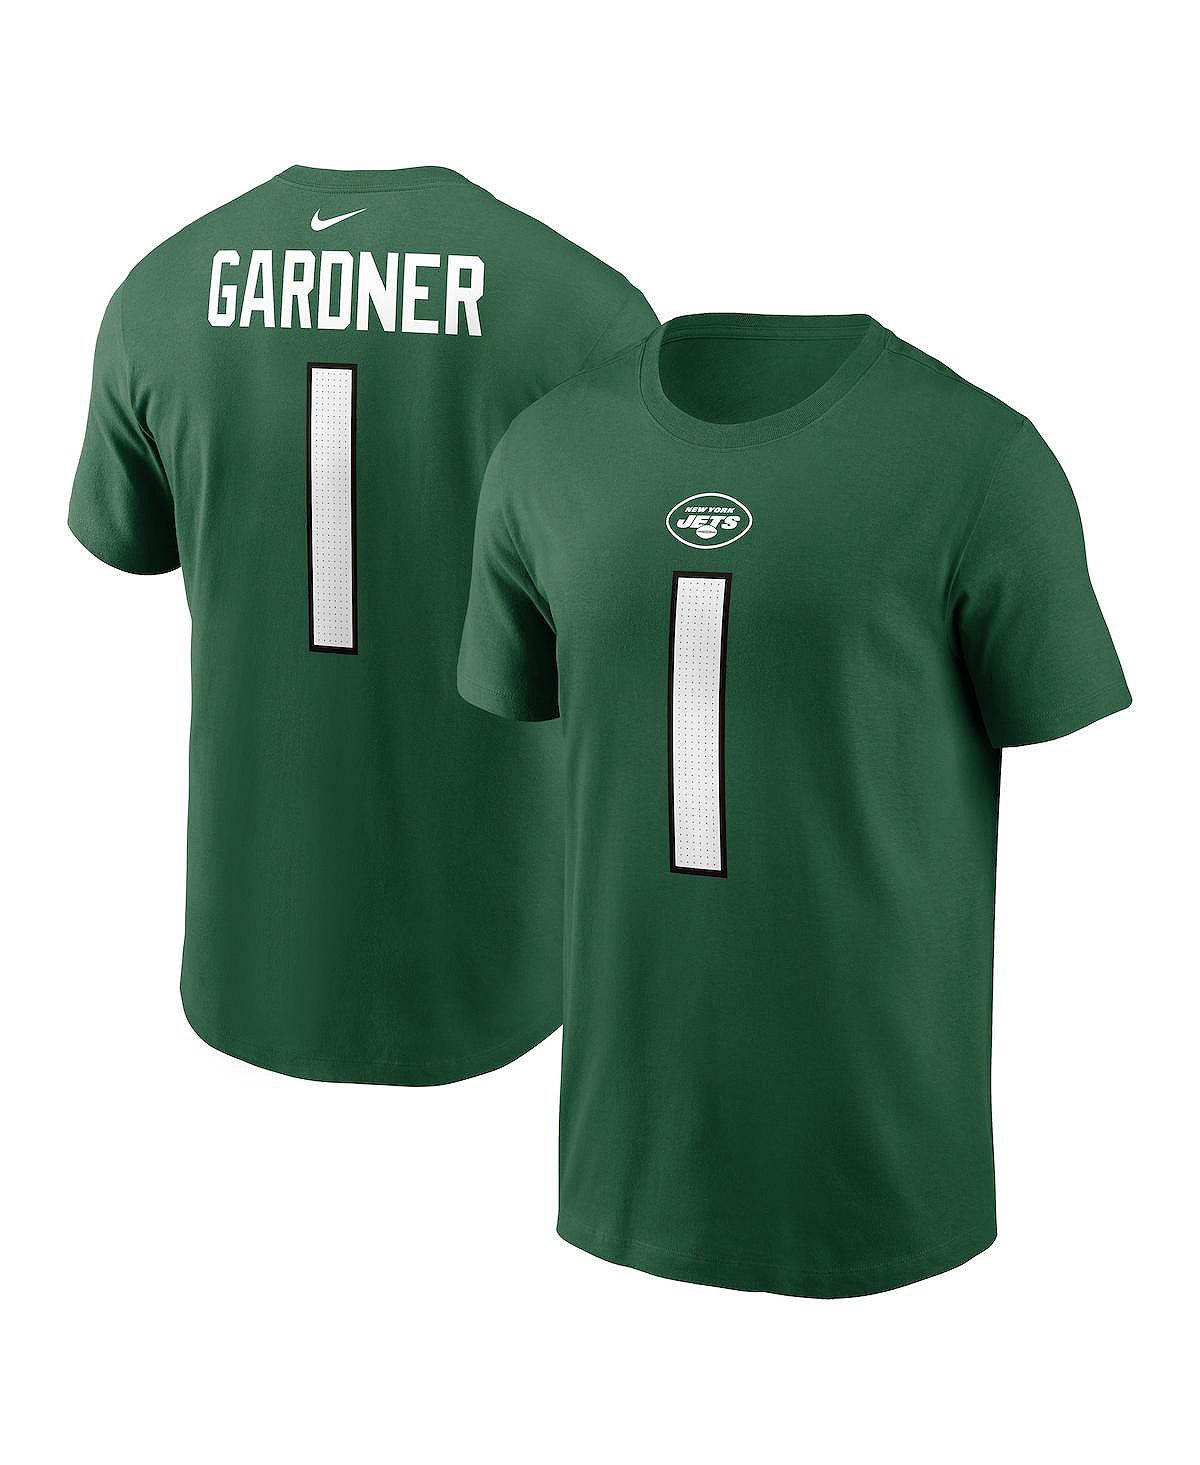 Мужская футболка Sauce Gardner Green New York Jets с именем и номером игрока Nike